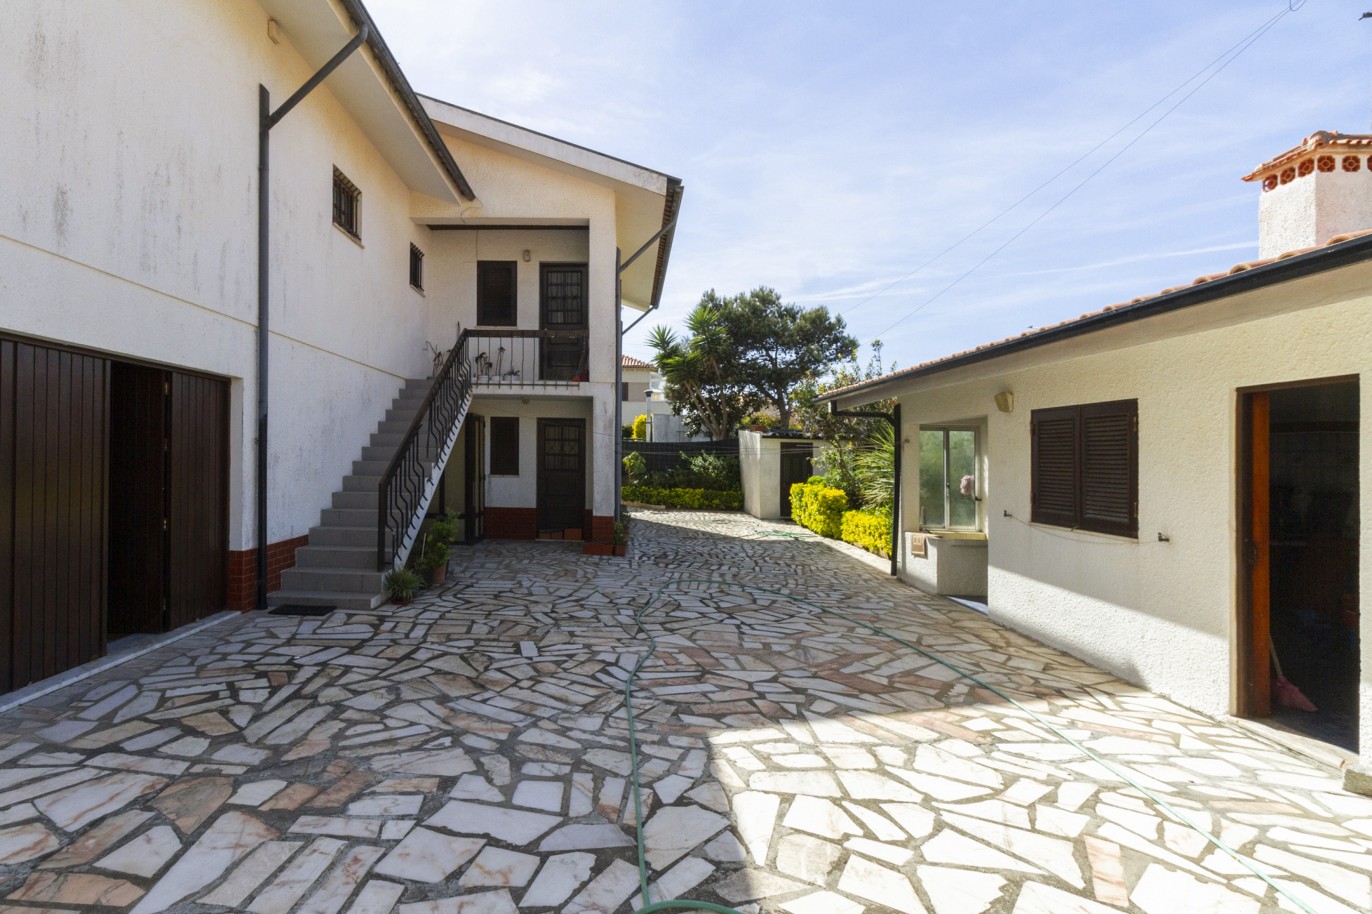 Freistehende Villa mit Garten, zu verkaufen, in der Nähe von Esmoriz Strand, Ovar, Nord Portugal_222815